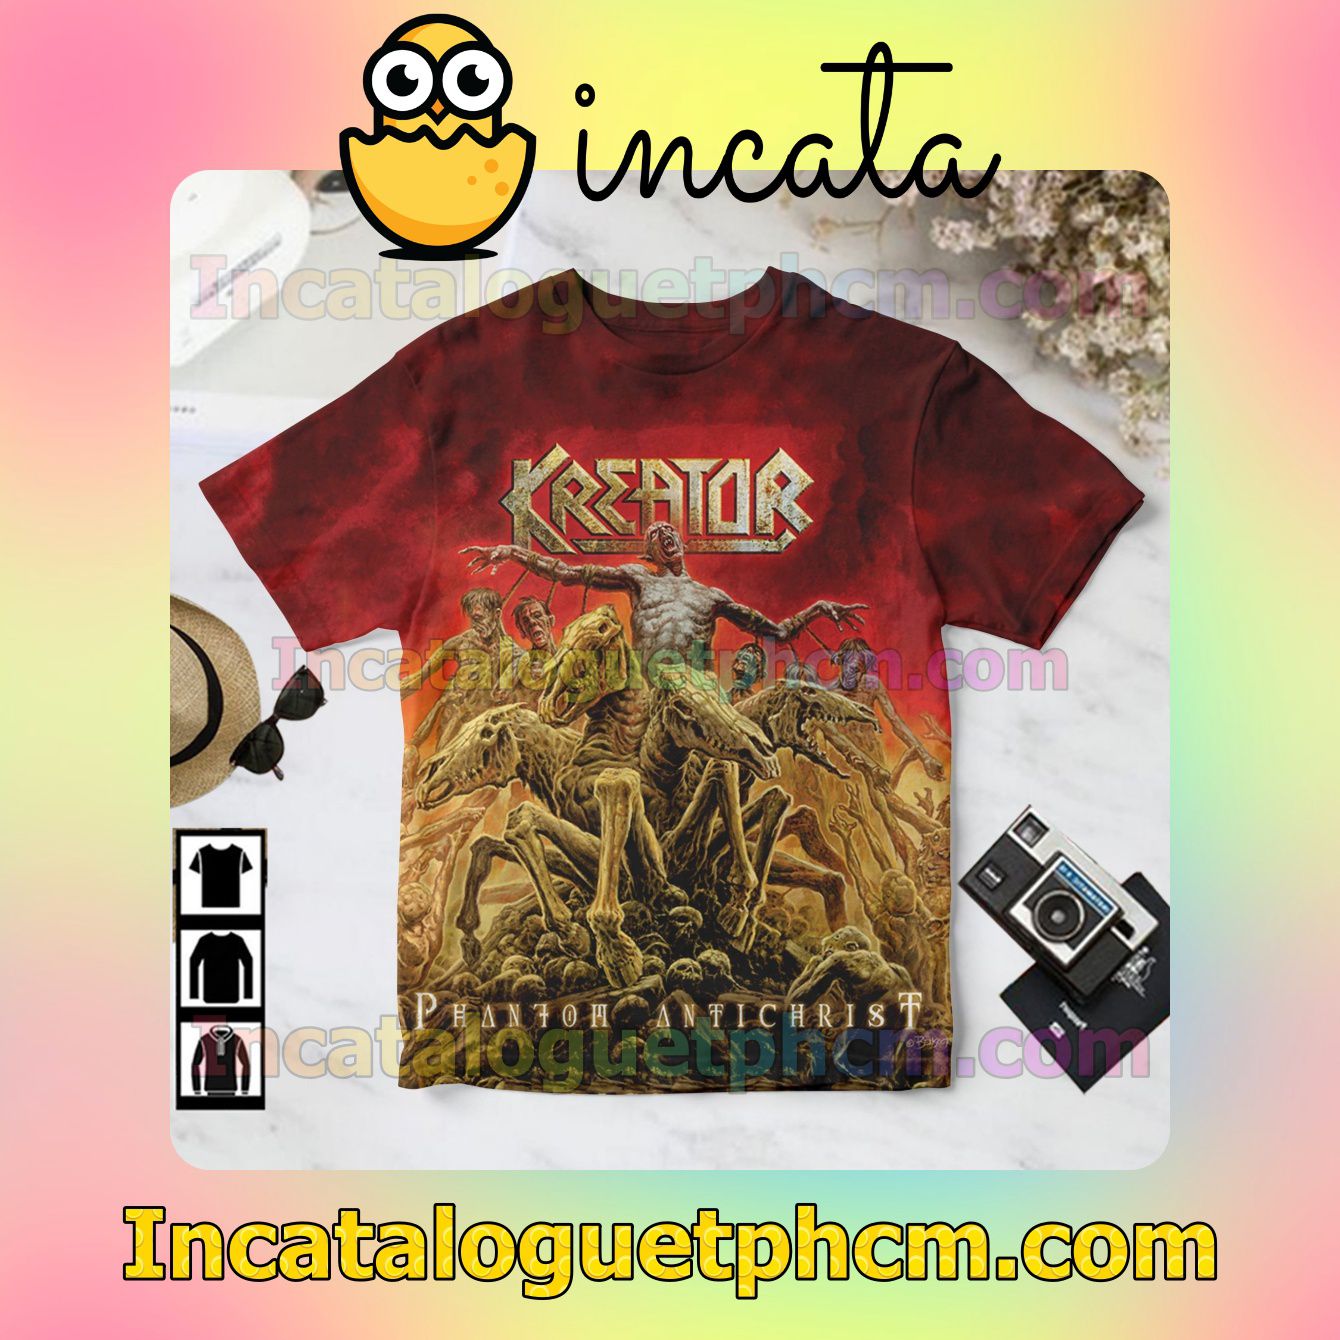 Kreator Phantom Antichrist Album Cover Gift Shirt